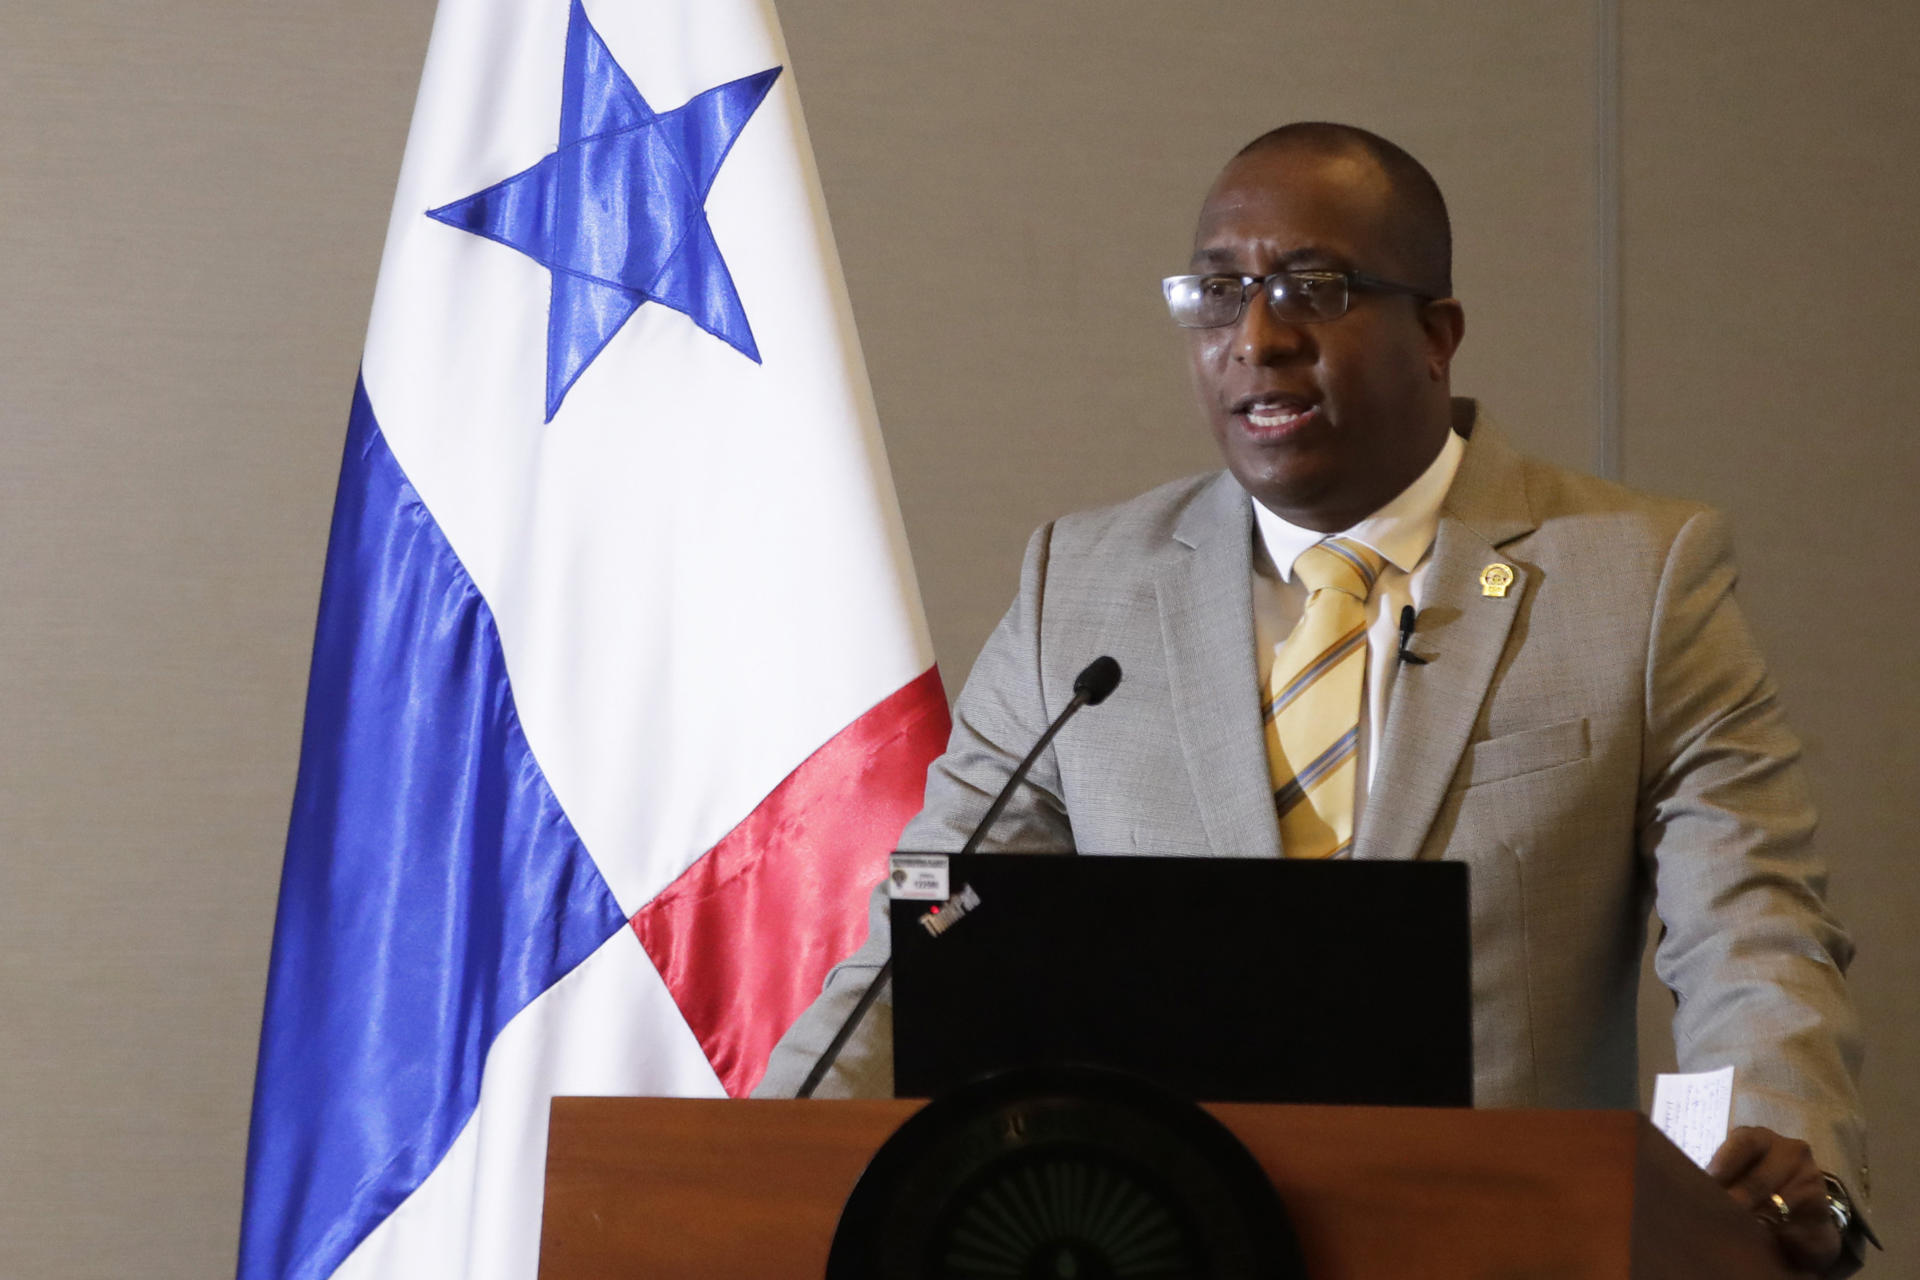 El Fiscal General de la Nación de Panamá, Javier Caraballo, en una fotografía de archivo. EFE/Bienvenido Velasco